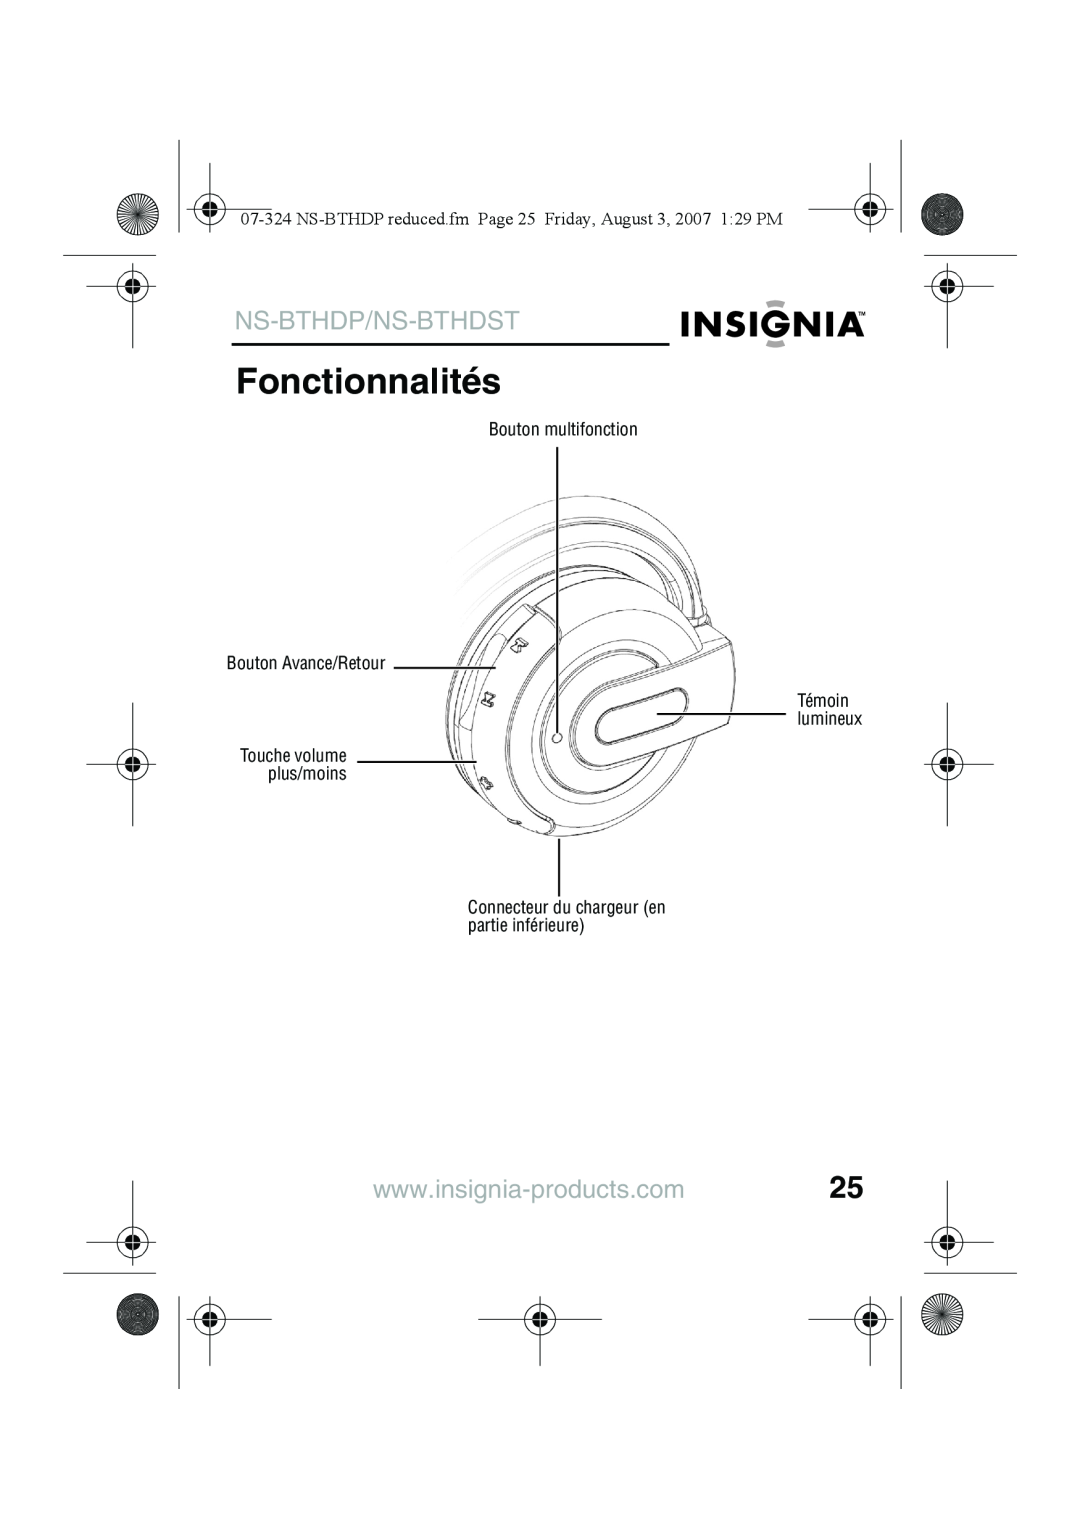 Insignia NS-BTHDST manual Fonctionnalités, Ns-Bthdp/Ns-Bthdst, Touche volume plus/moins 